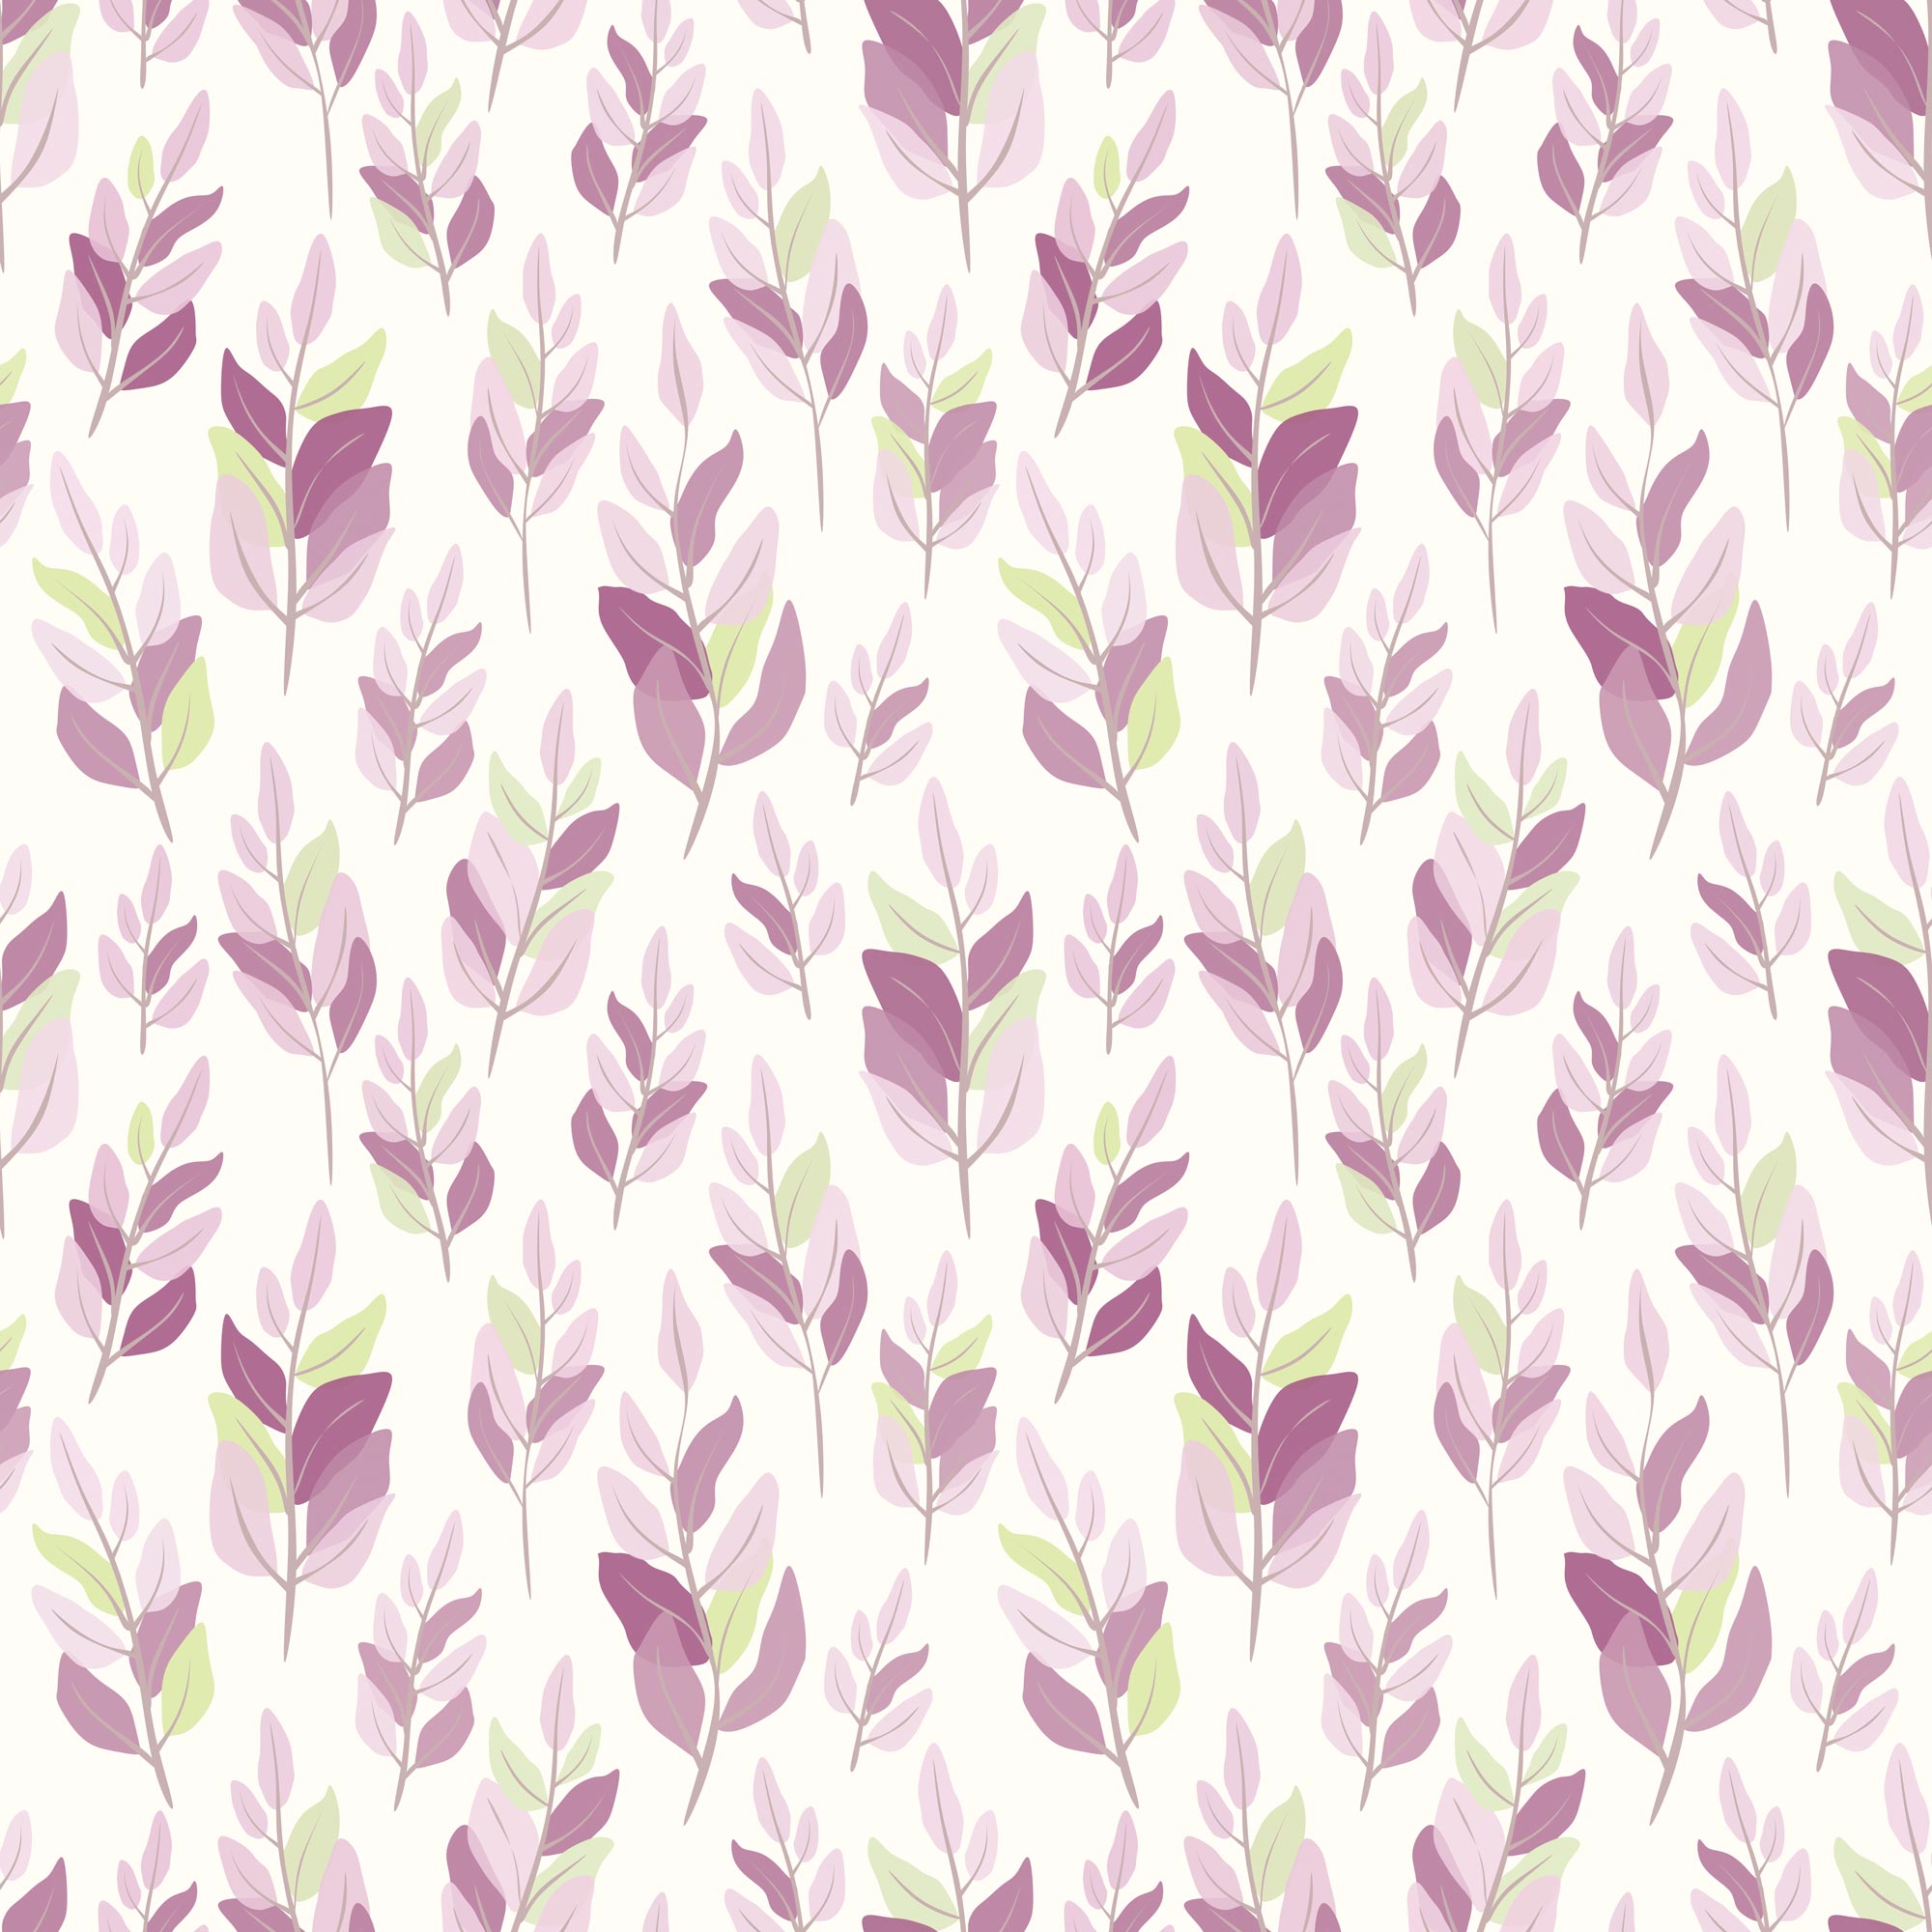 pattern leaves 3 2x2 jpg 527